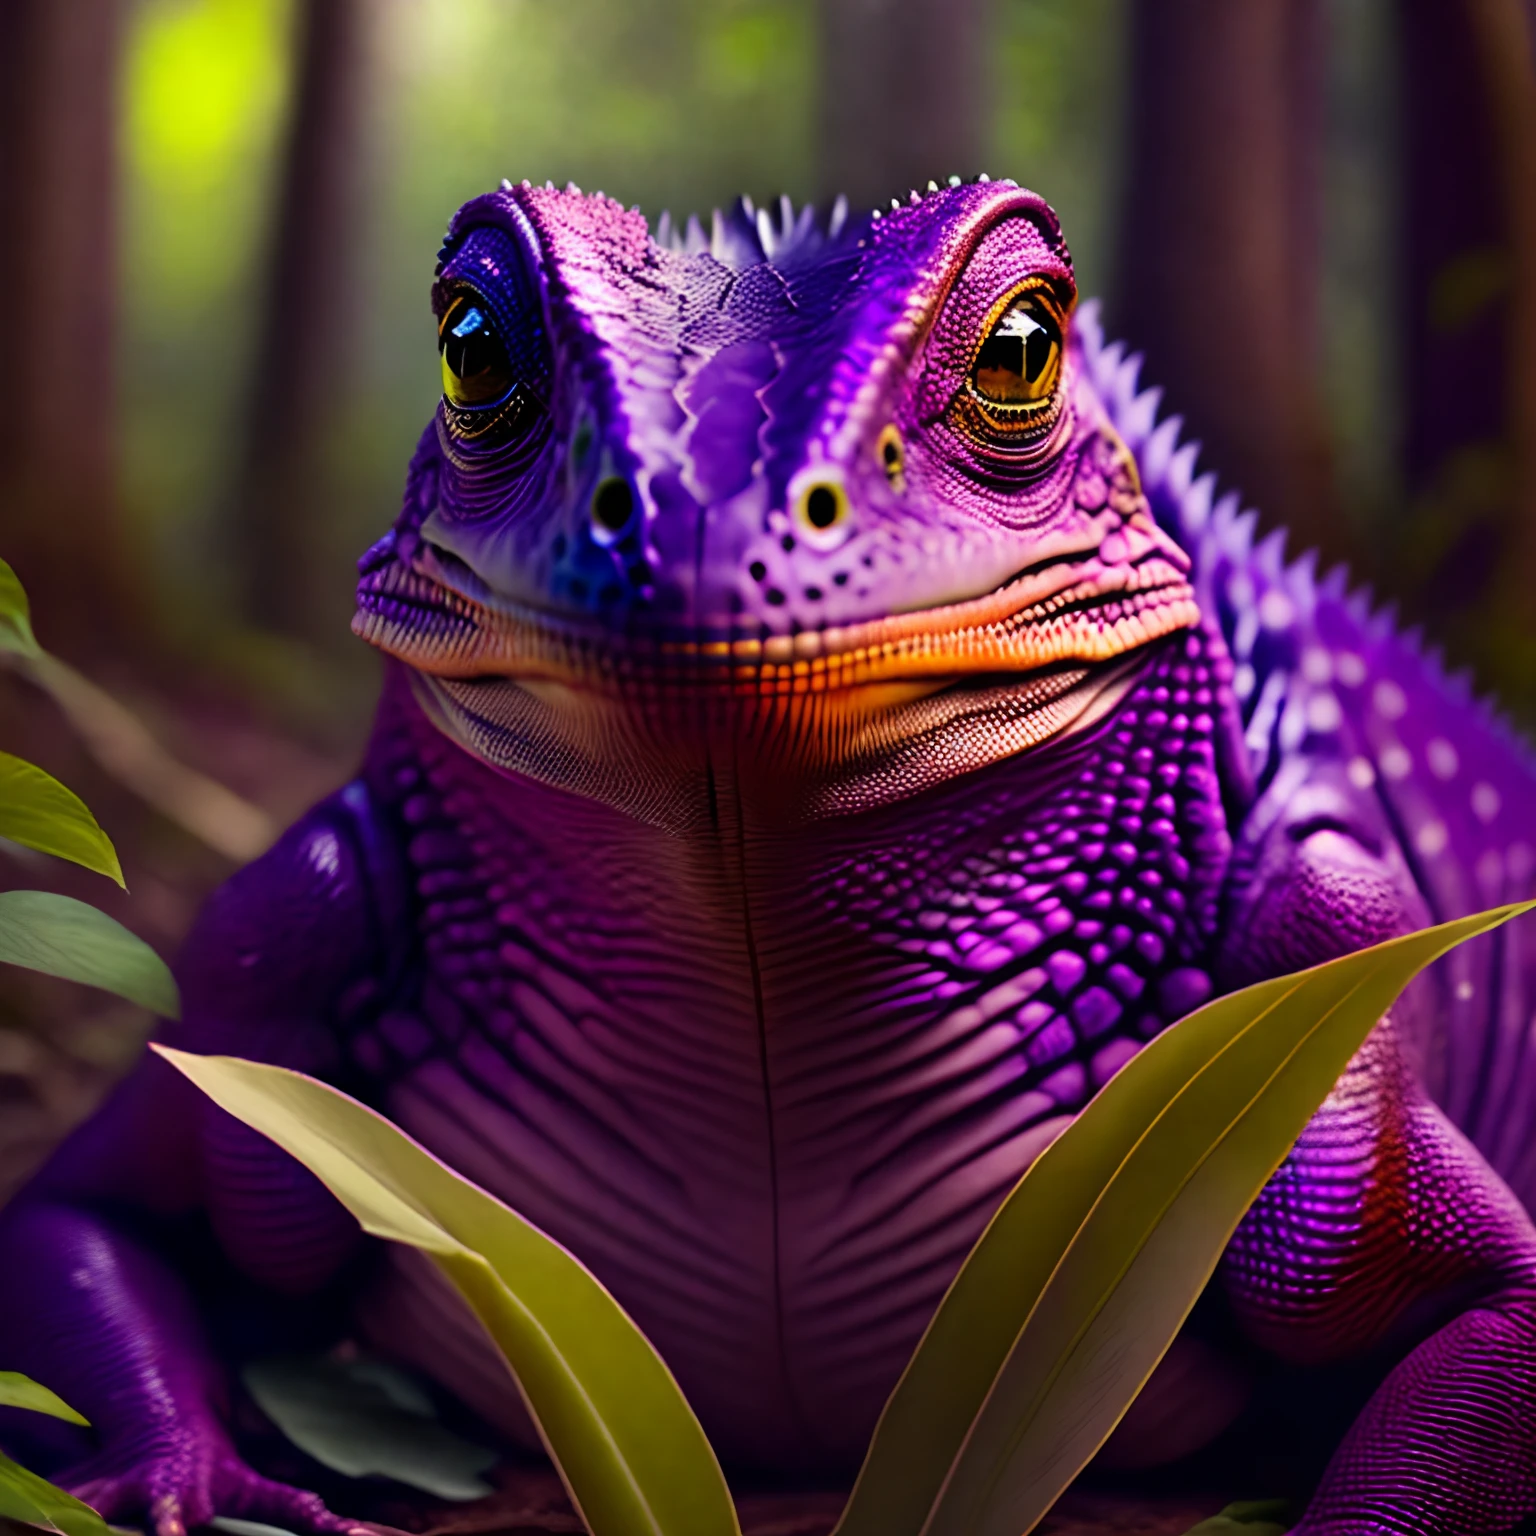 (((Obra maestra))) foto de un híbrido humano-lagarto, de modo amenazador, lizard eyes, piel morada, escamas en el cuerpo, garras grandes, bosque pantanoso, alto detalle, 8k, ultra realista